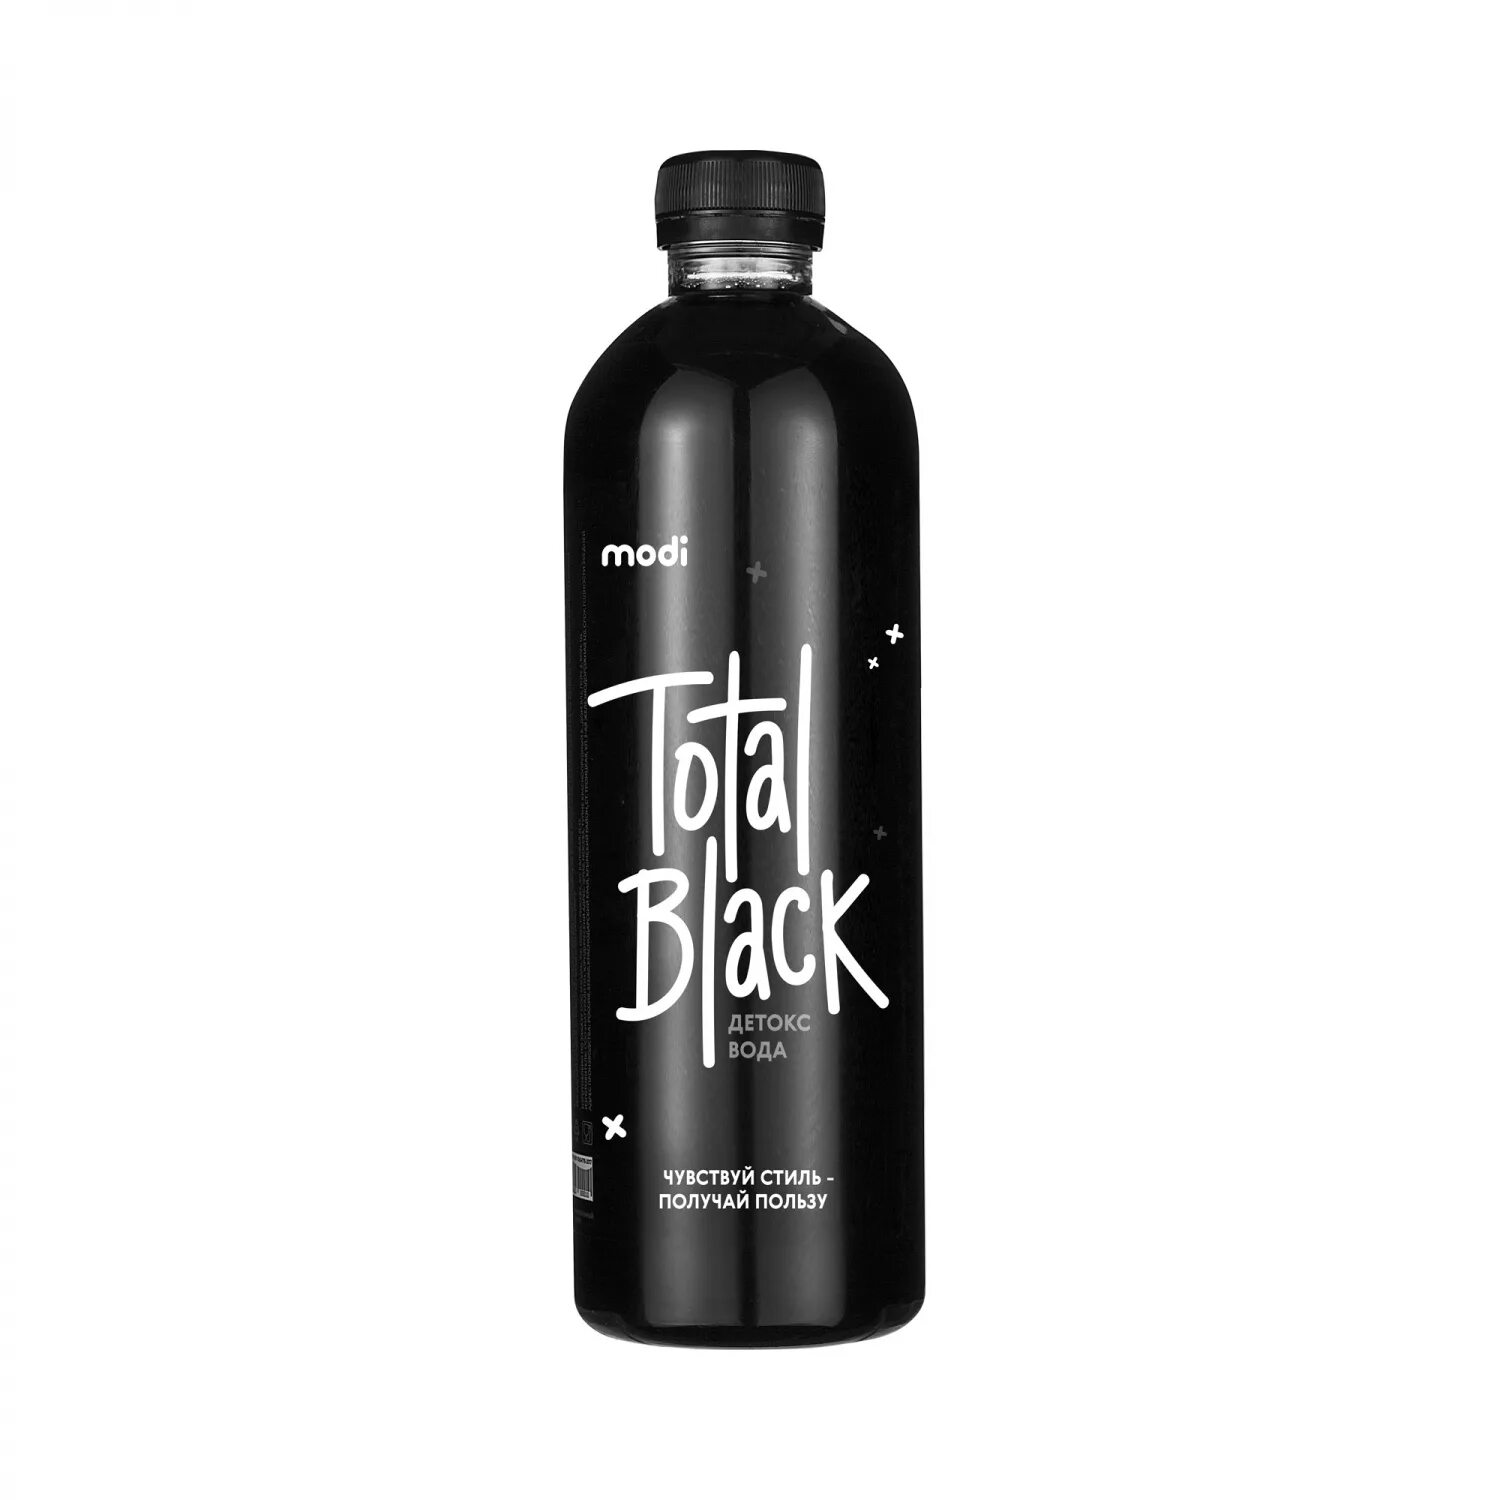 Черная вода состав. Черная вода Блэк Органик. Detox черная вода. Бутылка для воды черная. Вода черная упаковка.